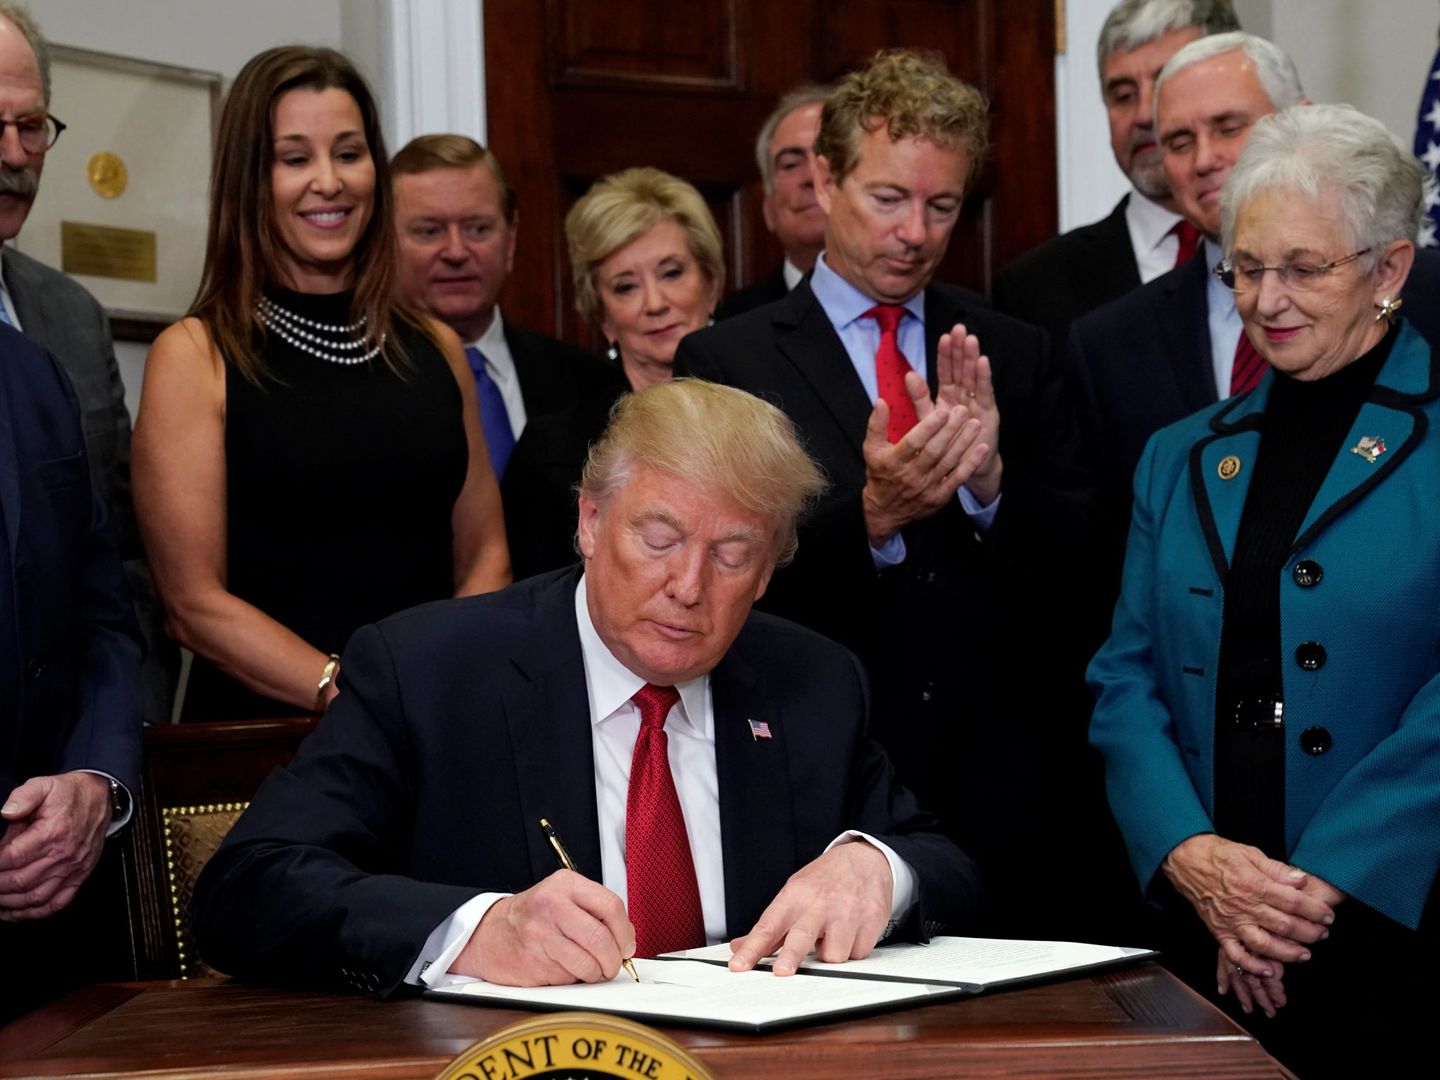 El senador republicano Rand Paul (R-KY) aplaude mientras el presidente Trump firma una orden ejecutiva que anula partes del Obamacare, el 12 de octubre de 2017. (Reuters)